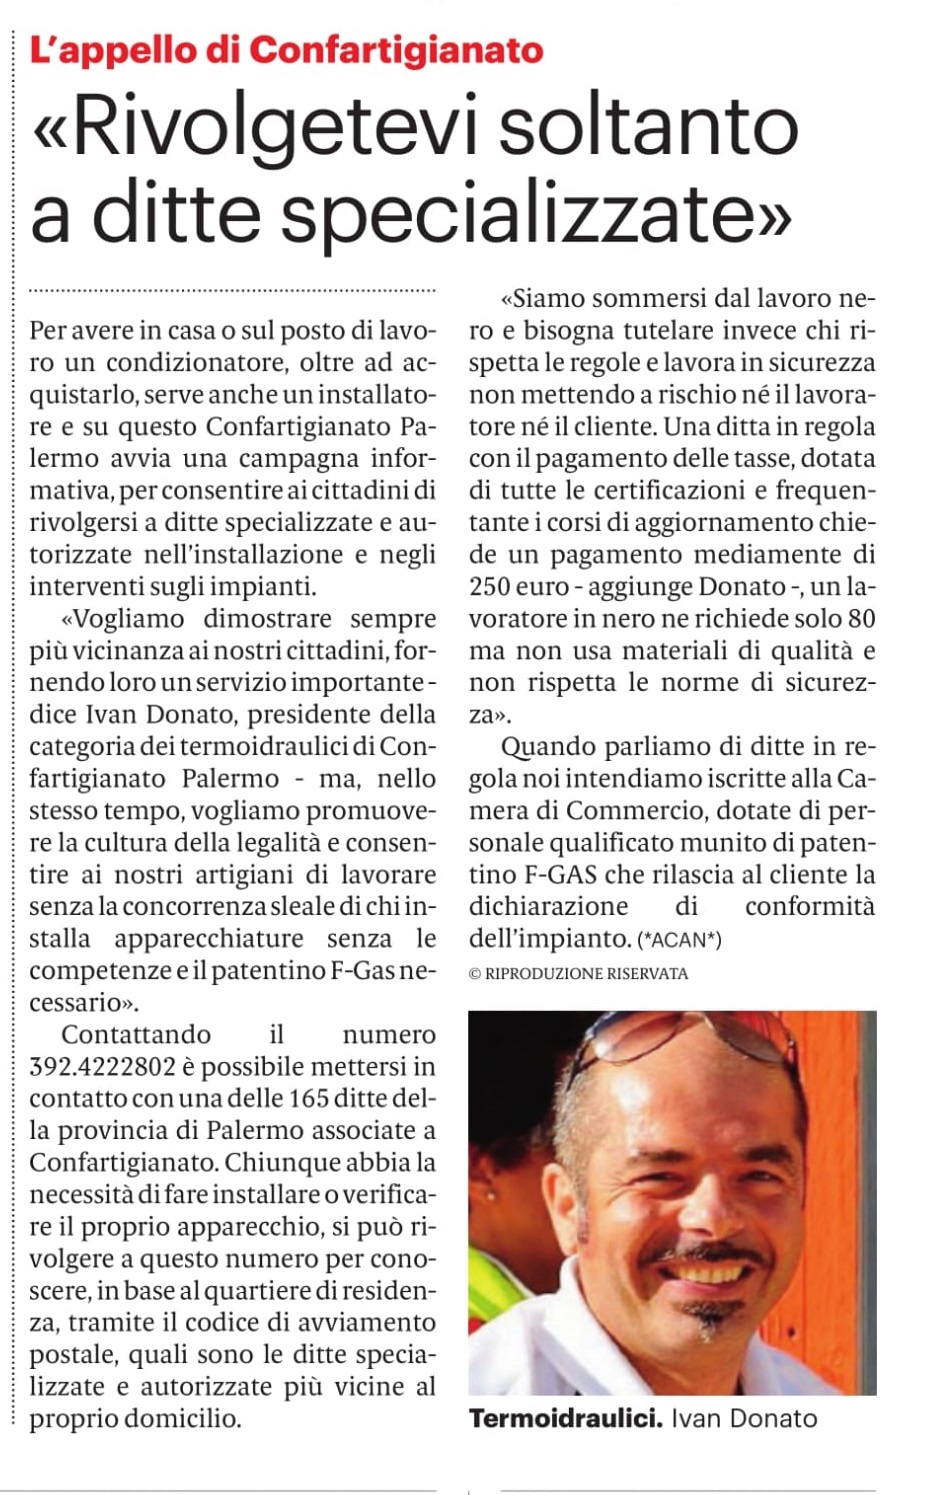 Ivan Donato articolo del Giornale di Sicilia del 10/08/2021